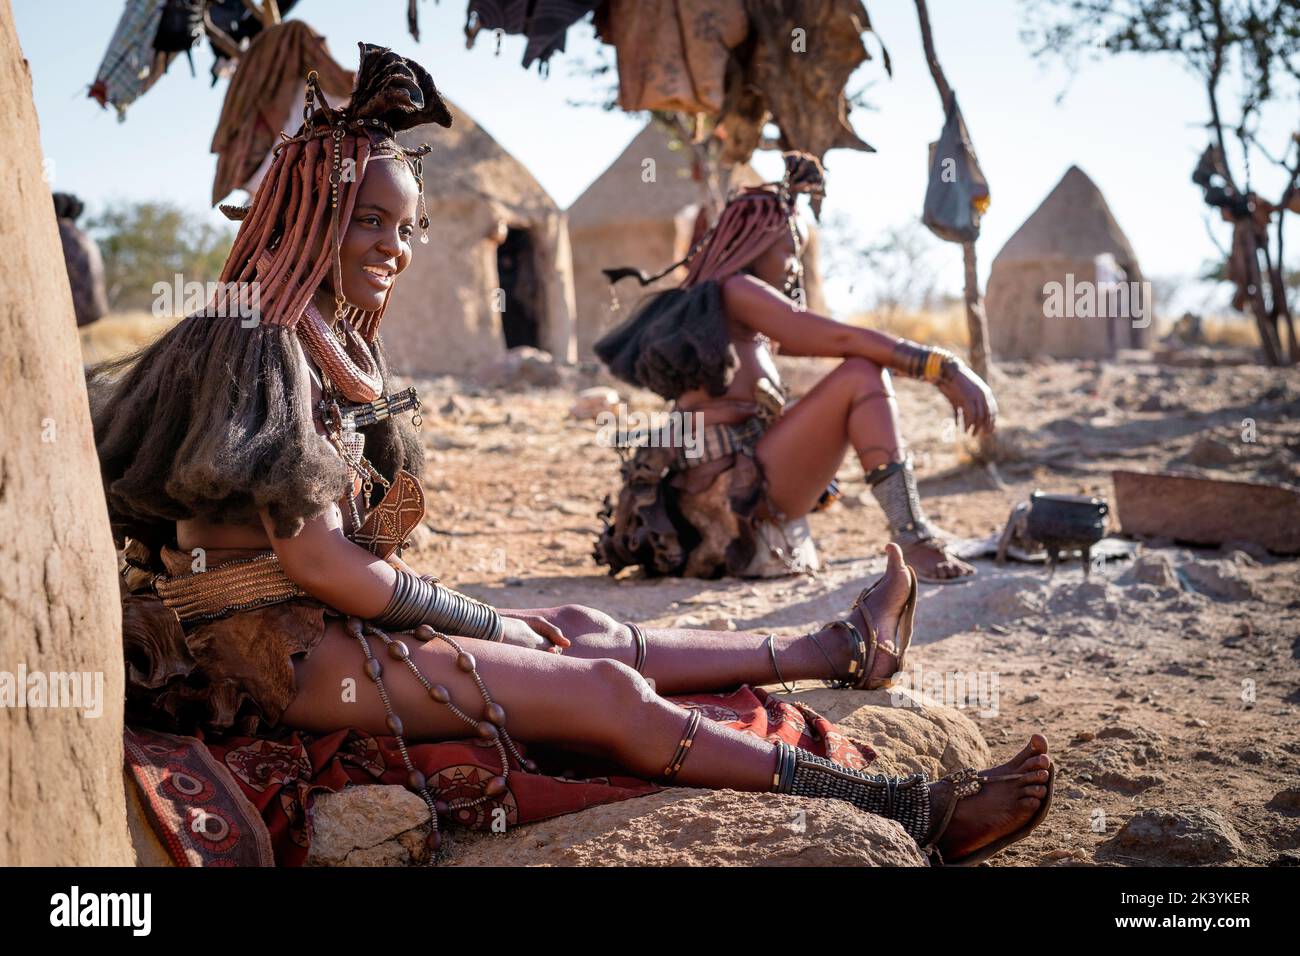 Mujeres himba sentadas fuera de sus chozas en una aldea tradicional de Himba en Namibia, África. Foto de stock